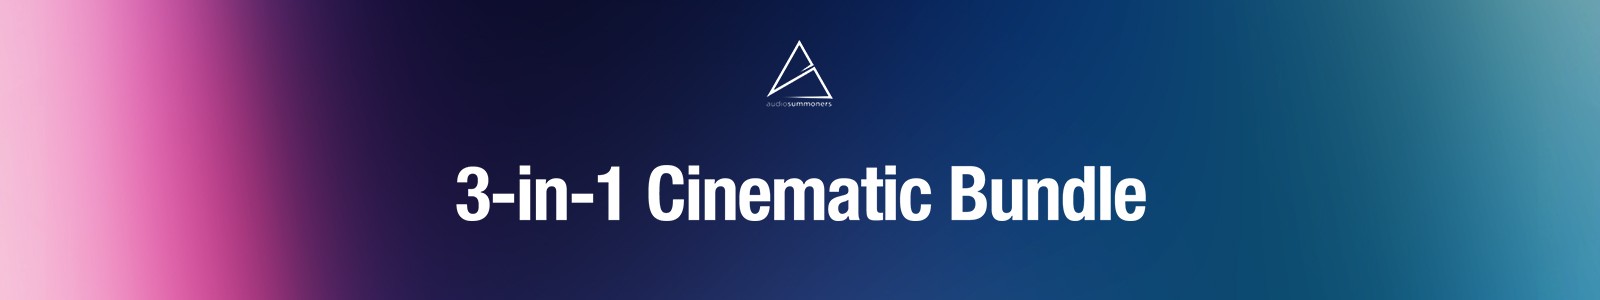 Audio Summoners 3-in-1 Cinematic Design Bundle